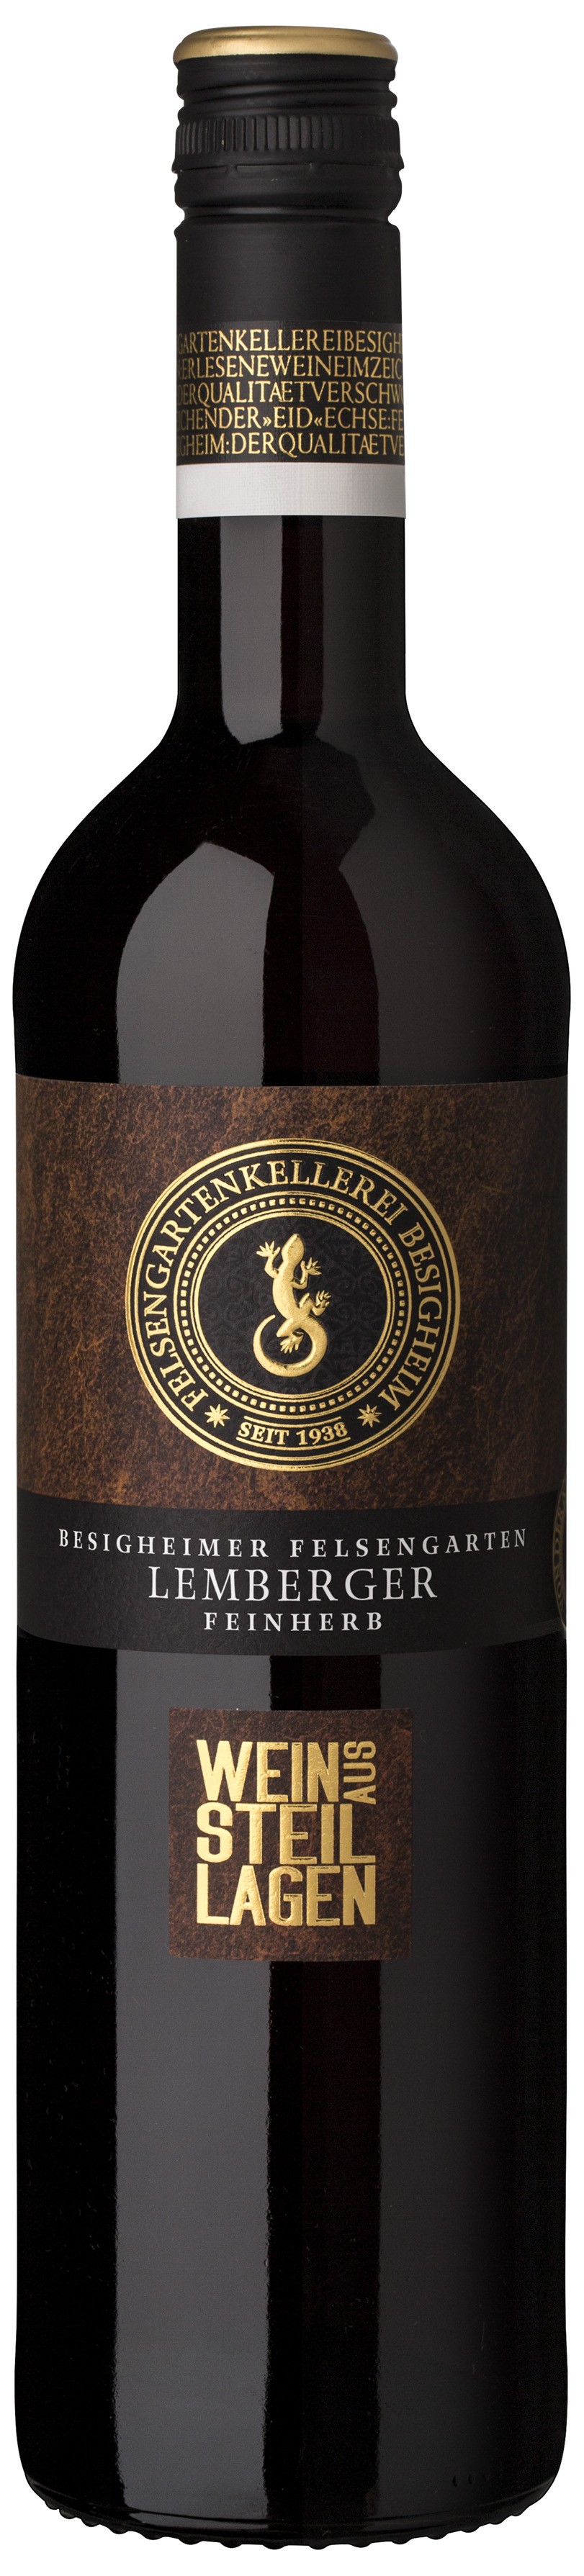 Besigheimer Felsengarten Steillagen Lemberger Qualitätswein feinherb 